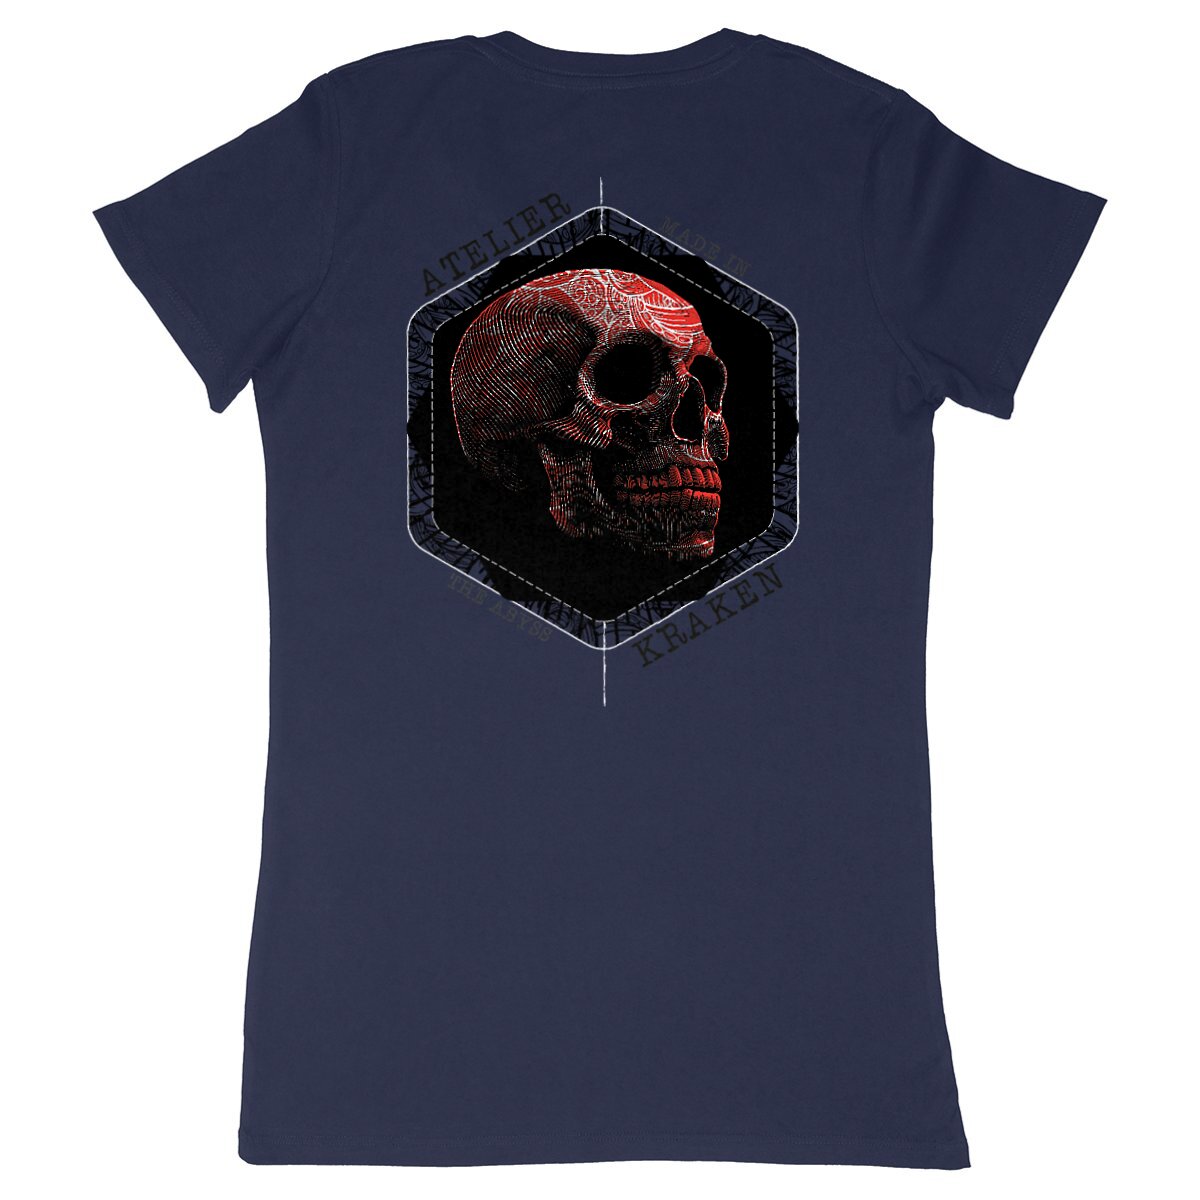 T-Shirt SKULL - Atelier Kraken Femme